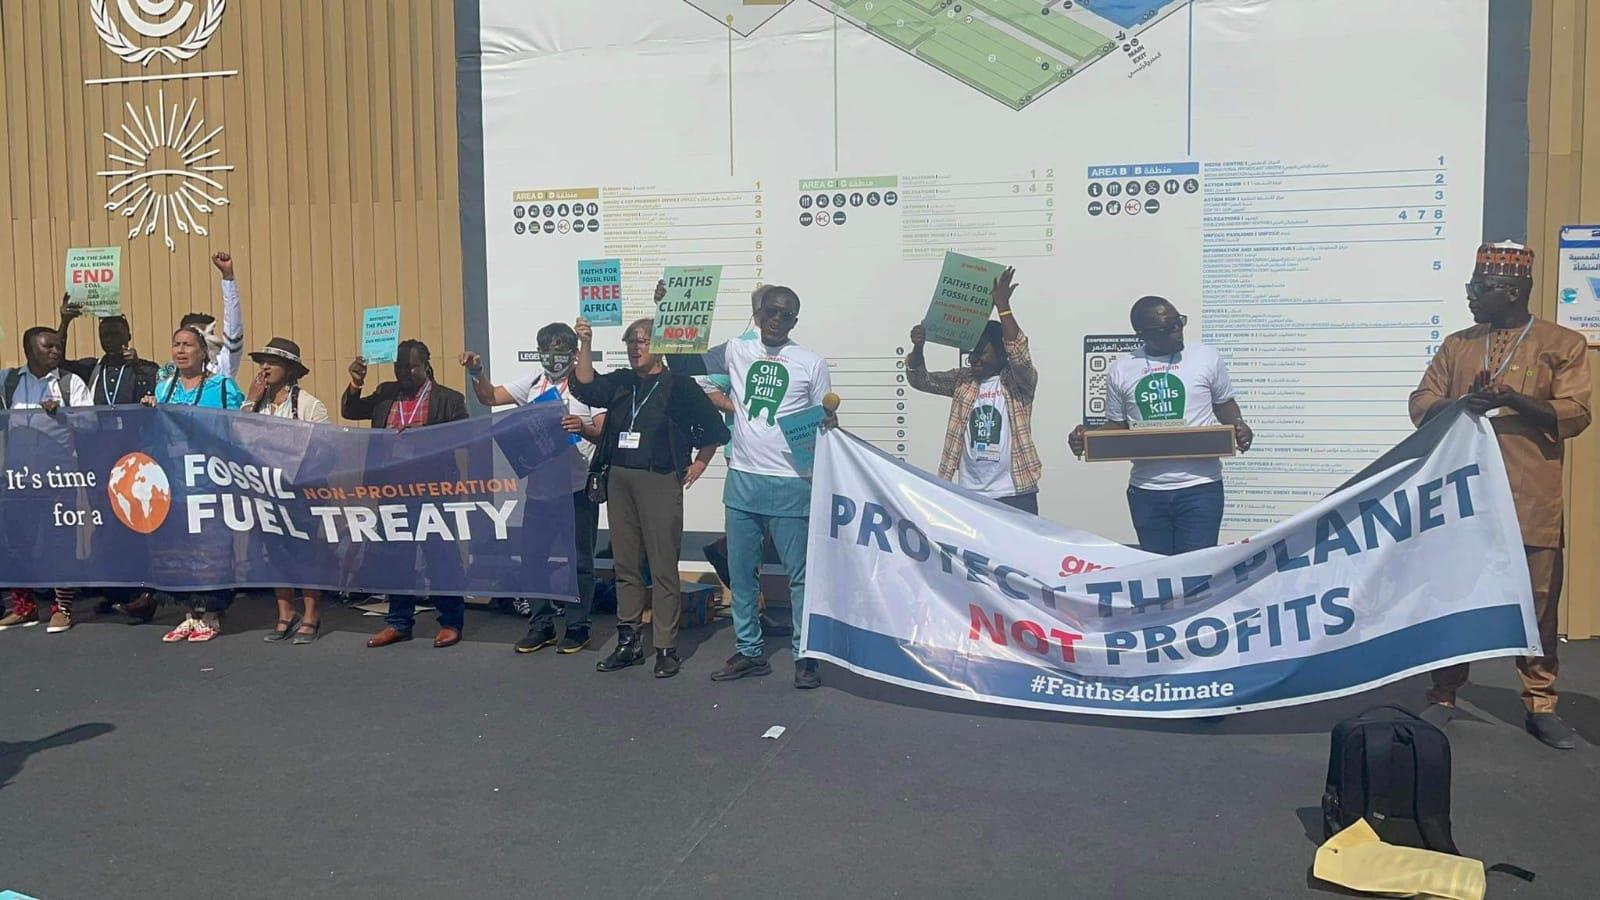 نشطاء من أندونيسيا يطالبون بالتوقف عن استخدام الوقود الأحفوري